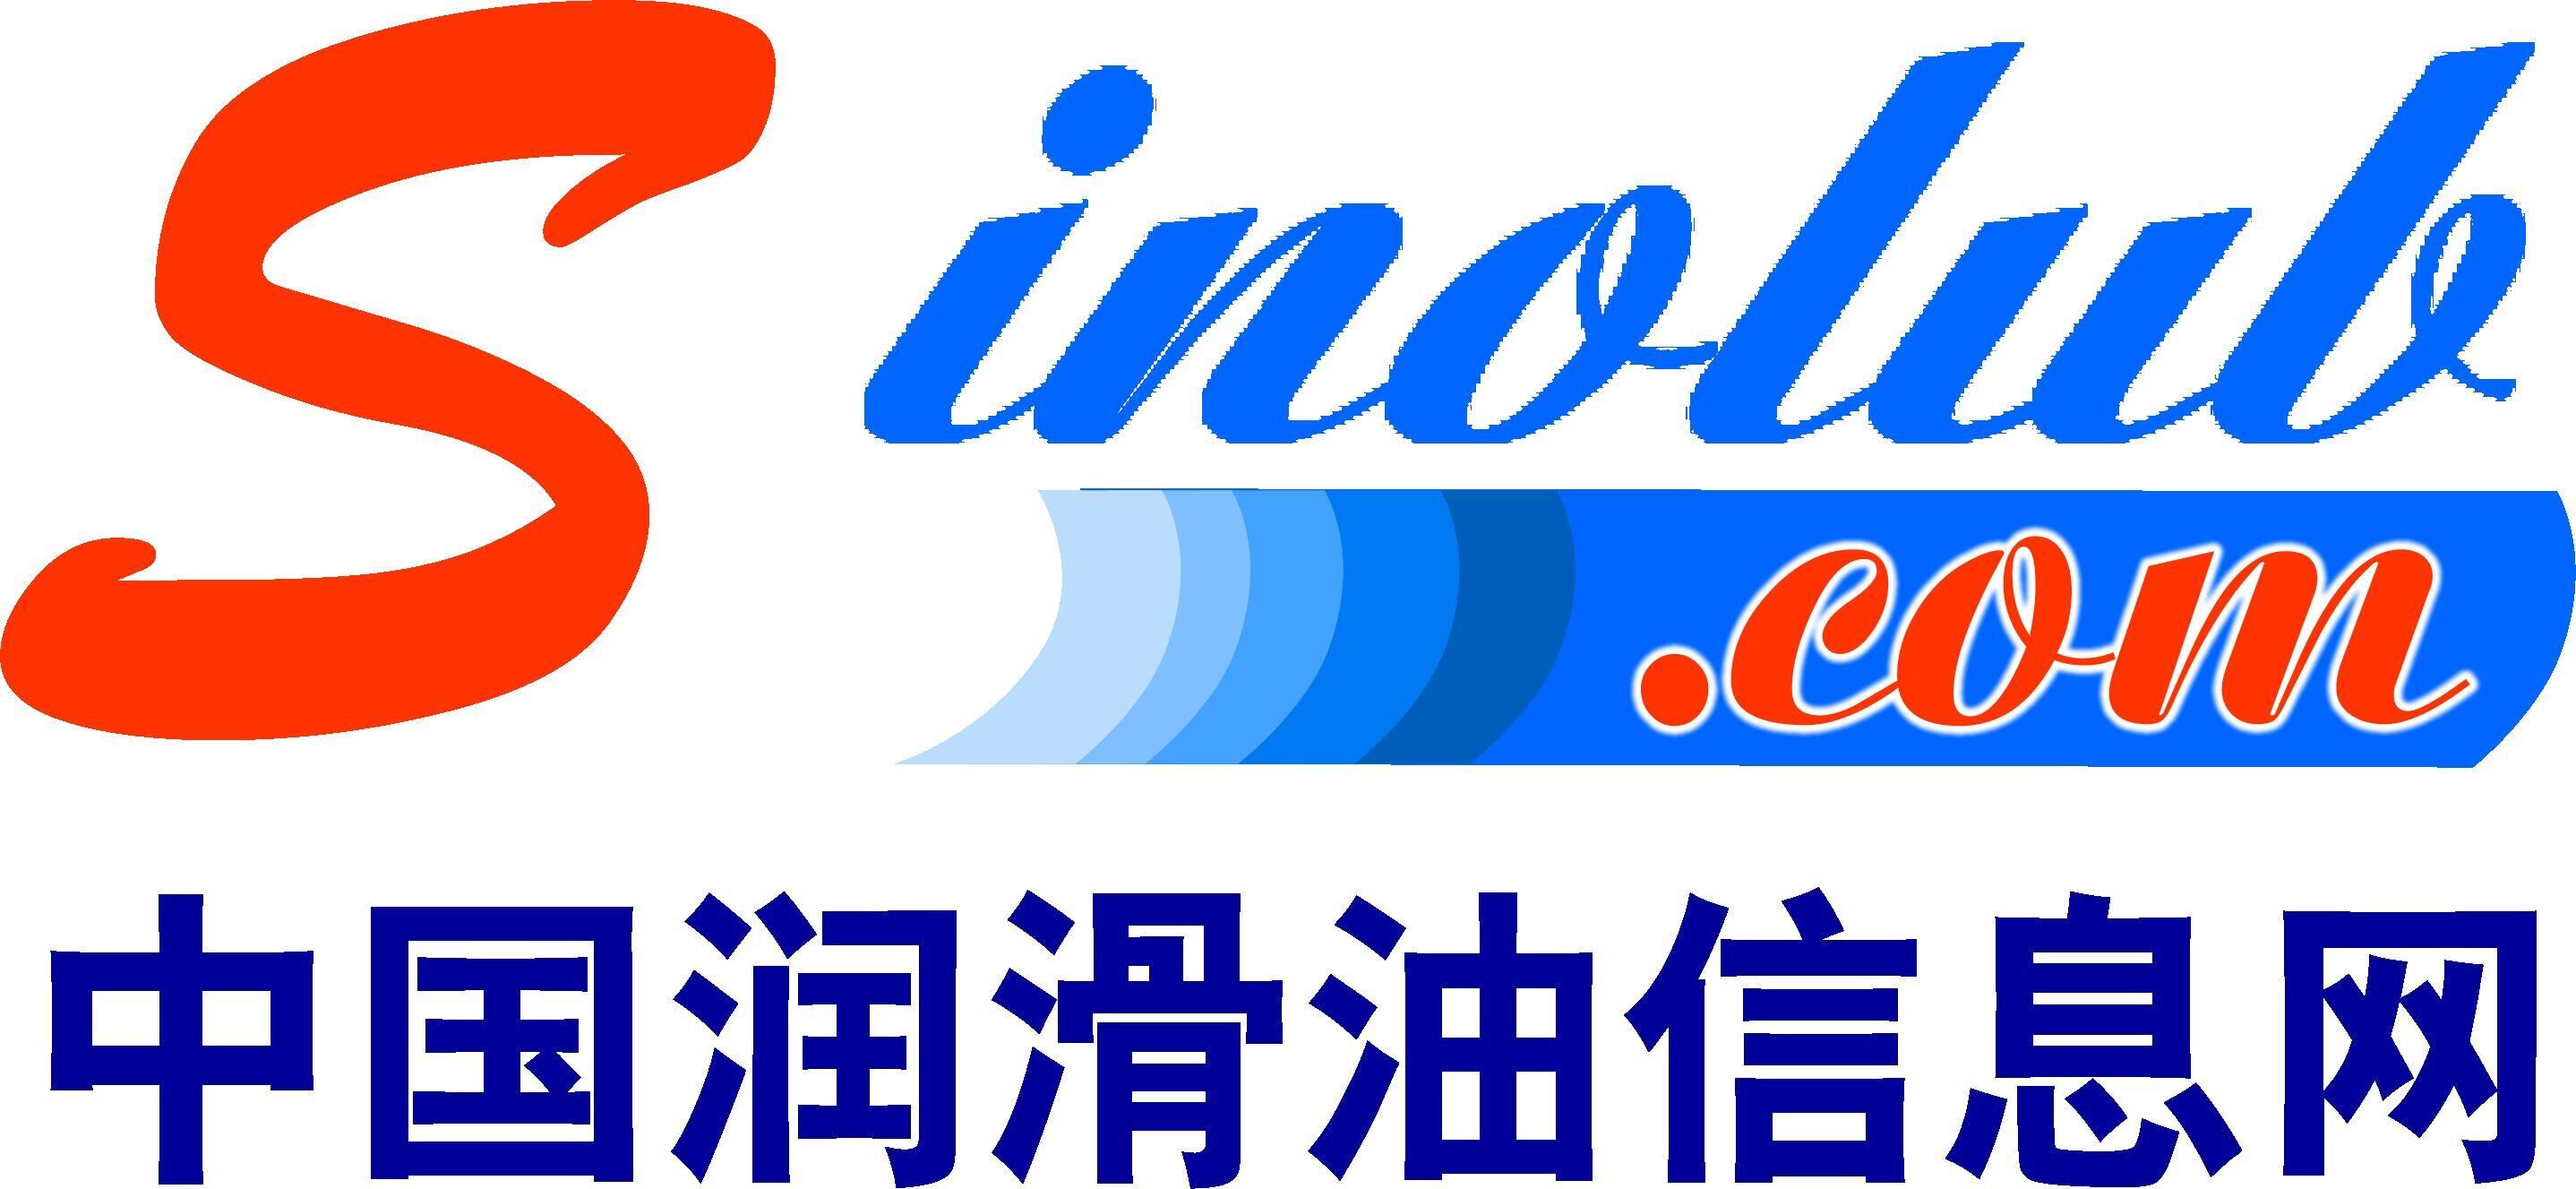 中国润滑油信息网_logo